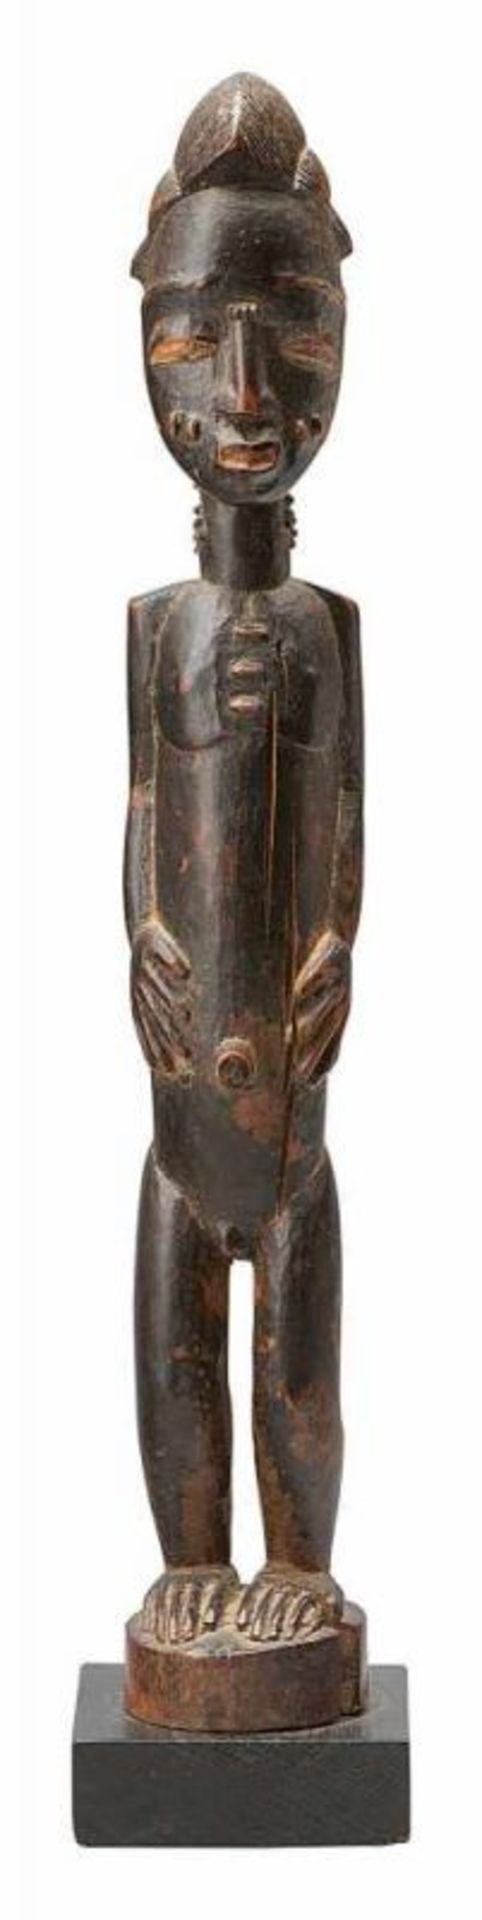 Männliche Figur der Baule Elfenbeinküste. Holz, geschnitzt und patiniert. Holzsockel später.